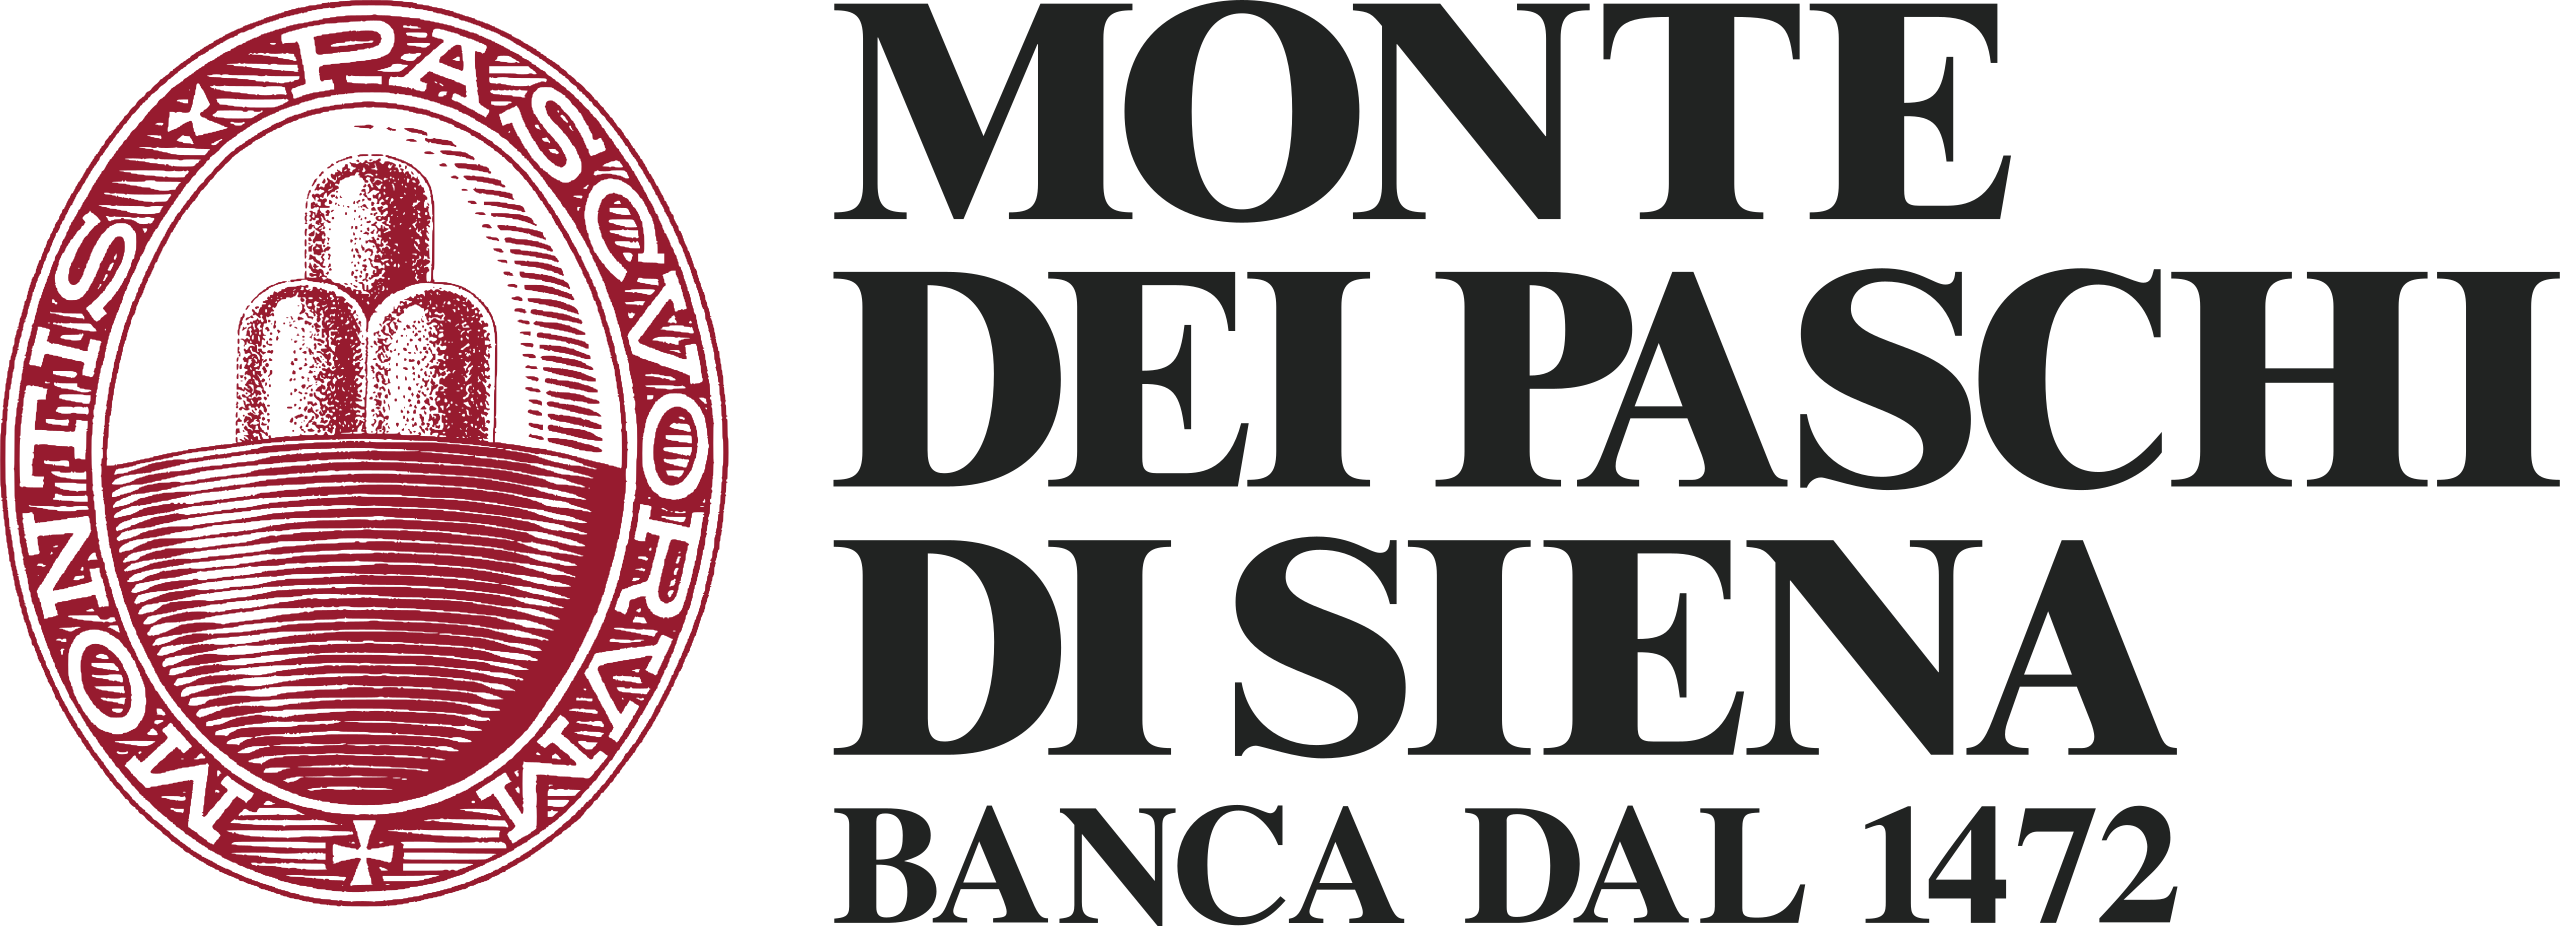 Monte_dei_Paschi_di_Siena_logo